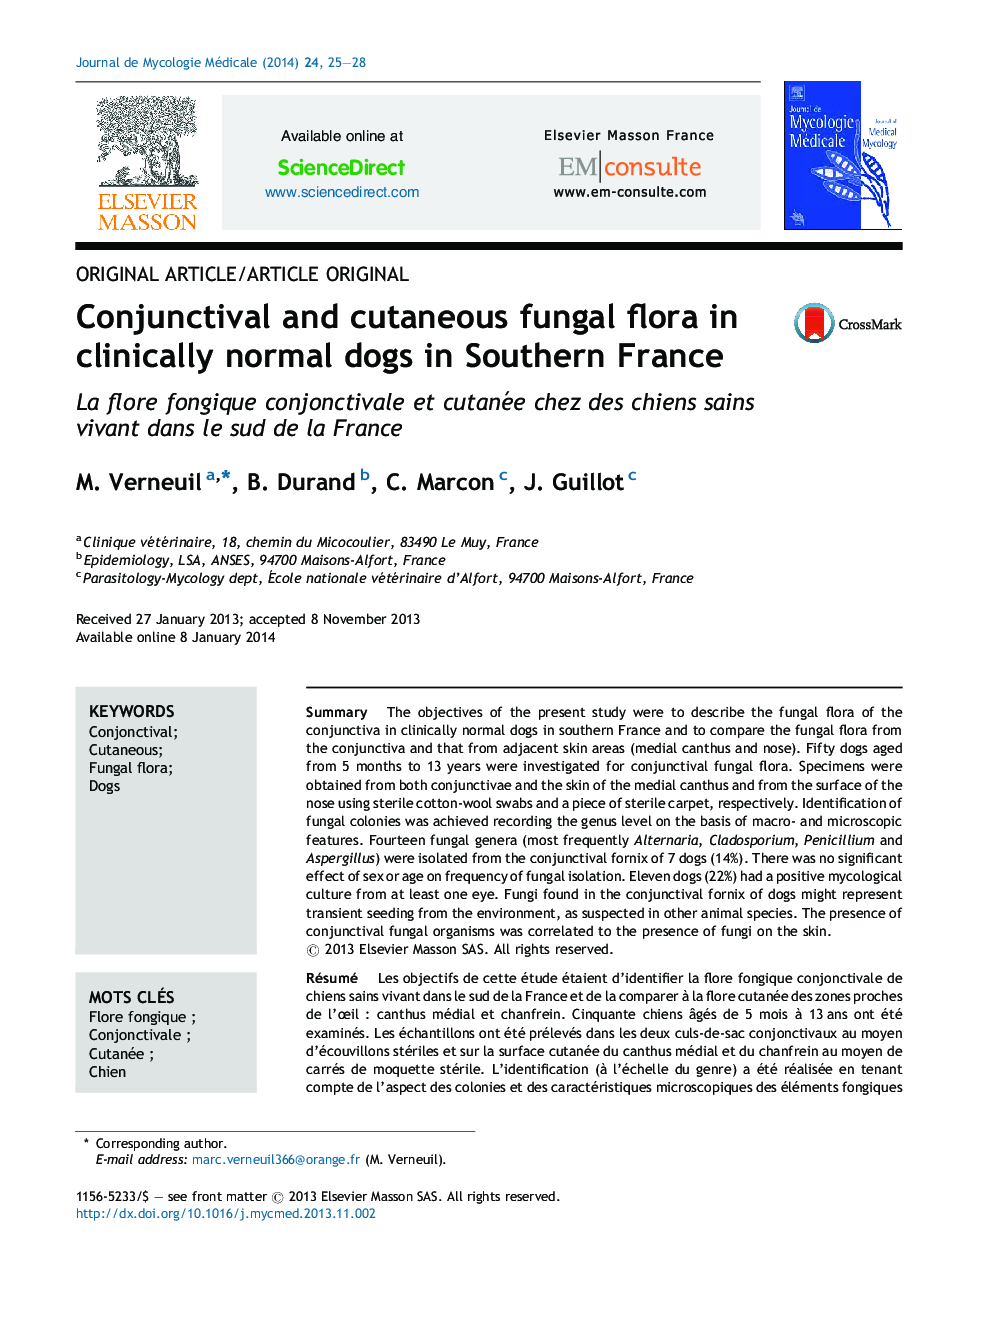 فلور قارچی جفت و جوش در سگهای بالینی طبیعی در جنوب فرانسه 